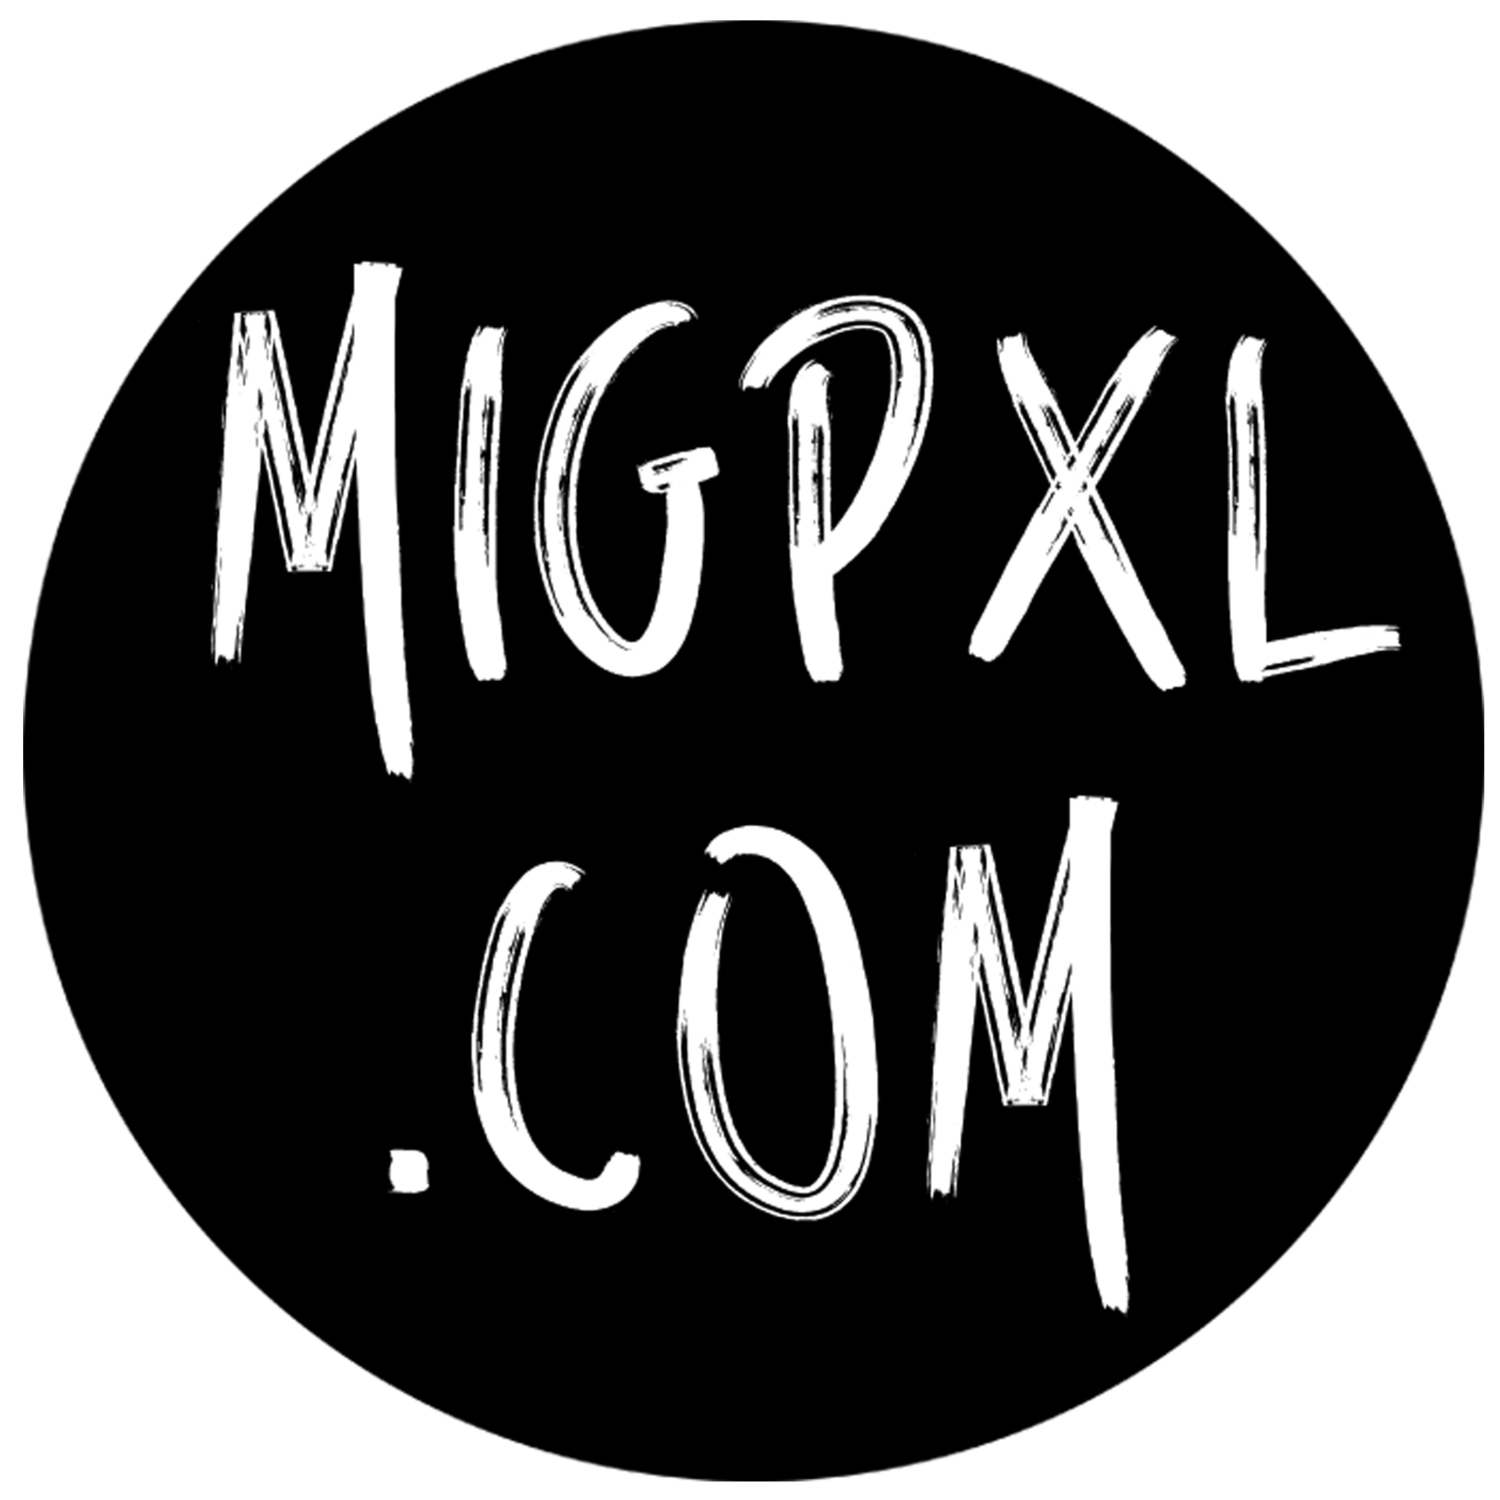 MigPxl Media